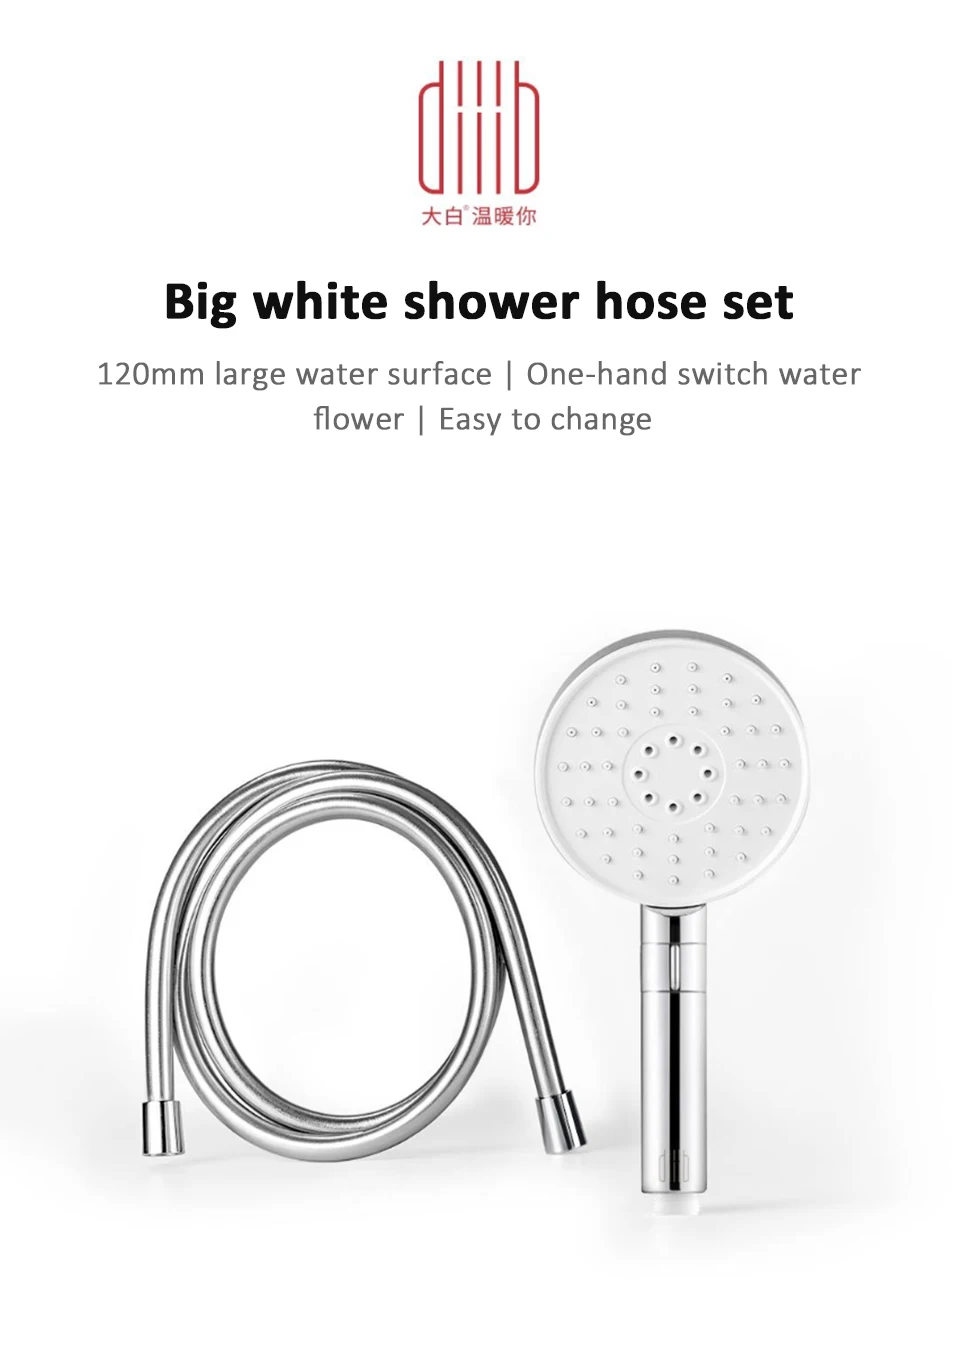 Xiaomi Diiib 3 режима ручной душевая головка набор 360 градусов 120 мм 53 отверстие для воды с ПВХ Matel мощный массажный Душ